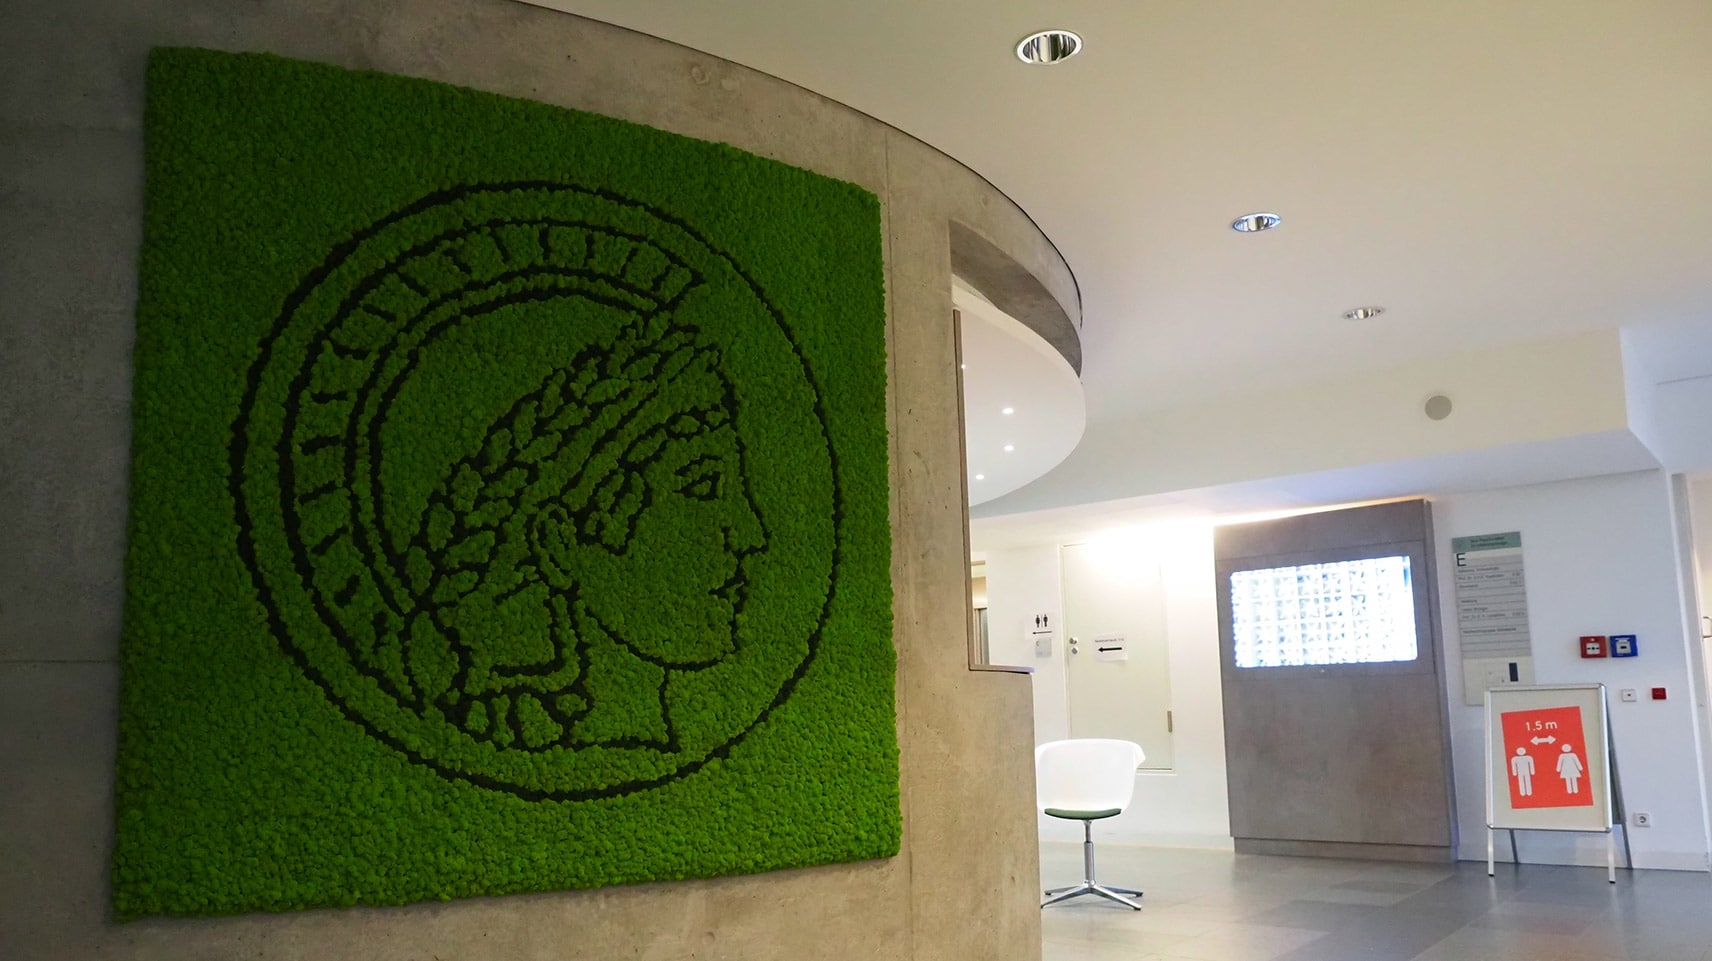 Moosbild aus Island Moos mit Logo Max Planck Institut